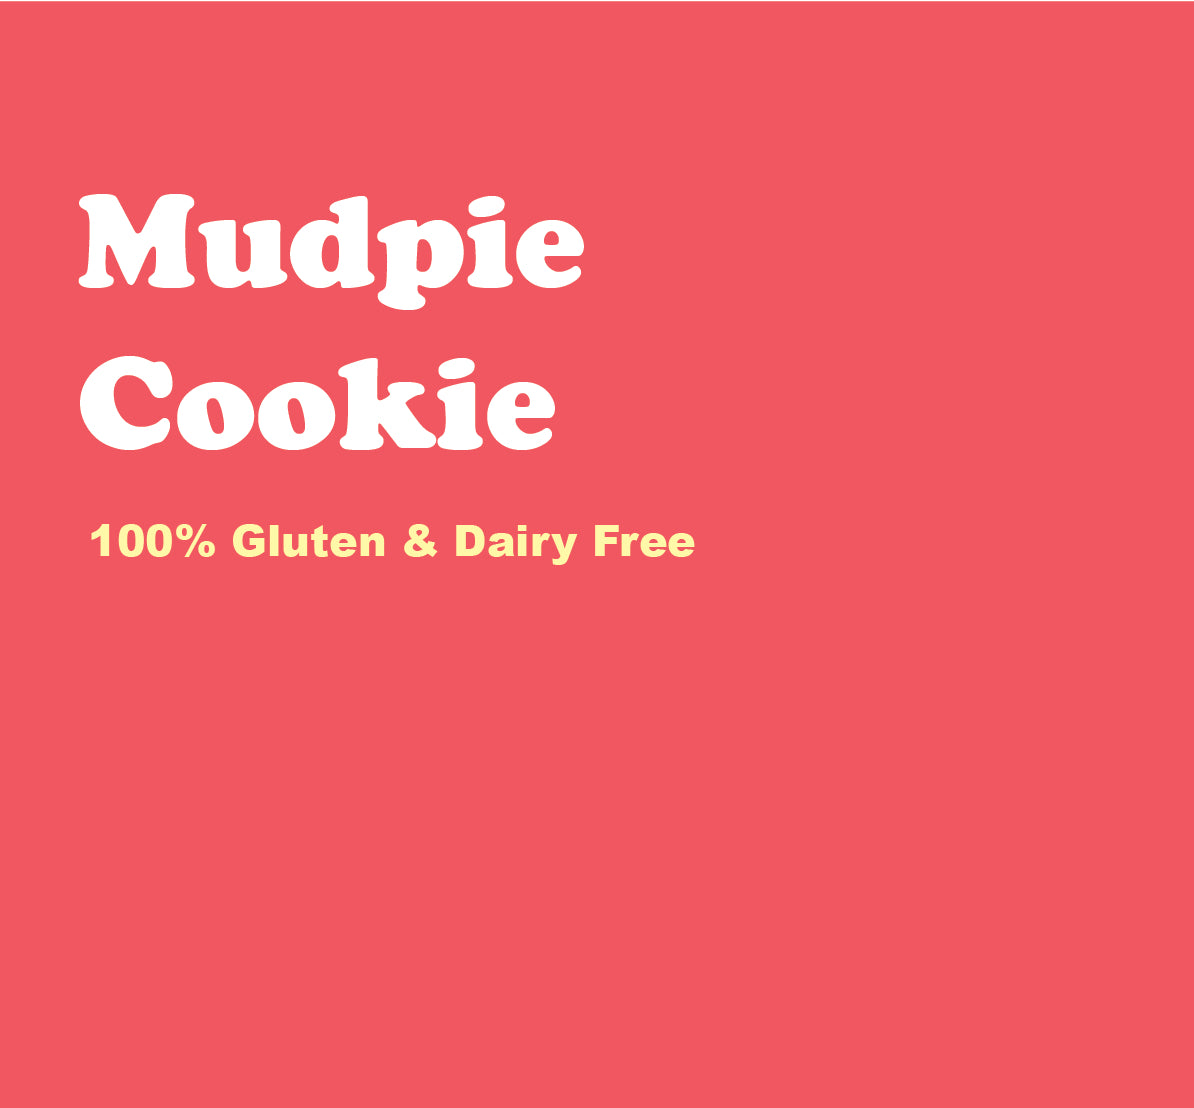 Mudpie Cookie